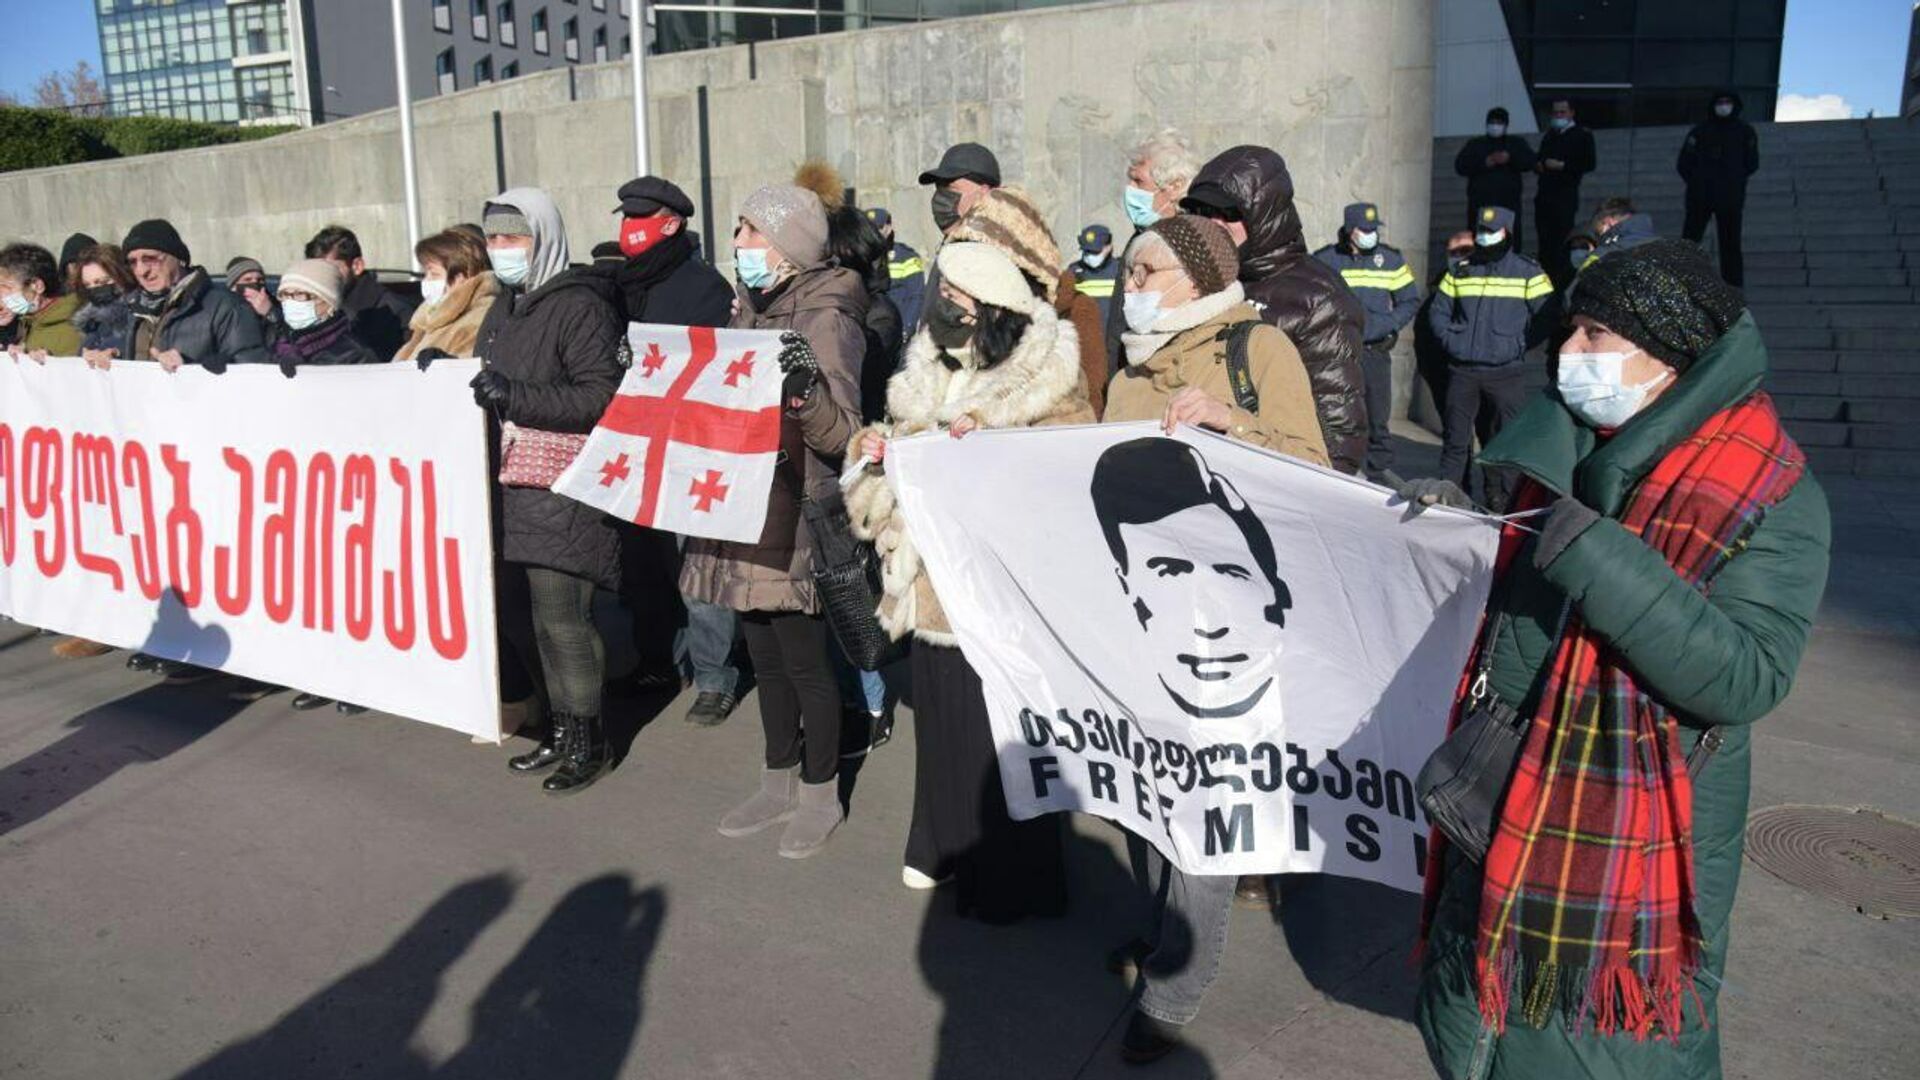 Сектор Миши, Единое нацдвижение и сторонники Саакашвили проводят акцию у минюста, 17 января 2022 года - Sputnik Грузия, 1920, 17.01.2022